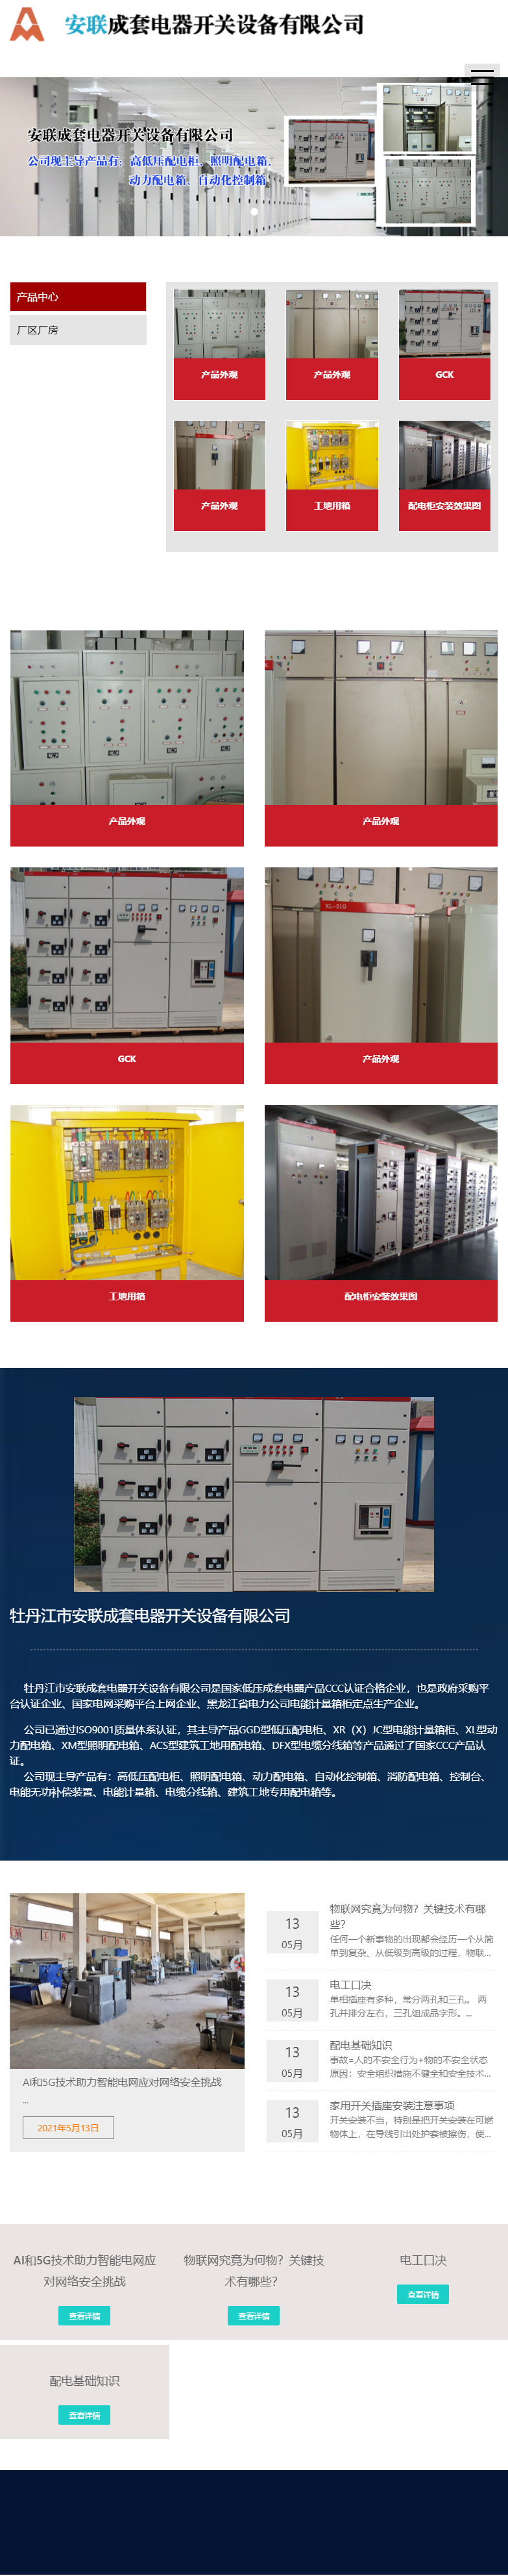 牡丹江市安联成套电器开关设备有限公司网站案例